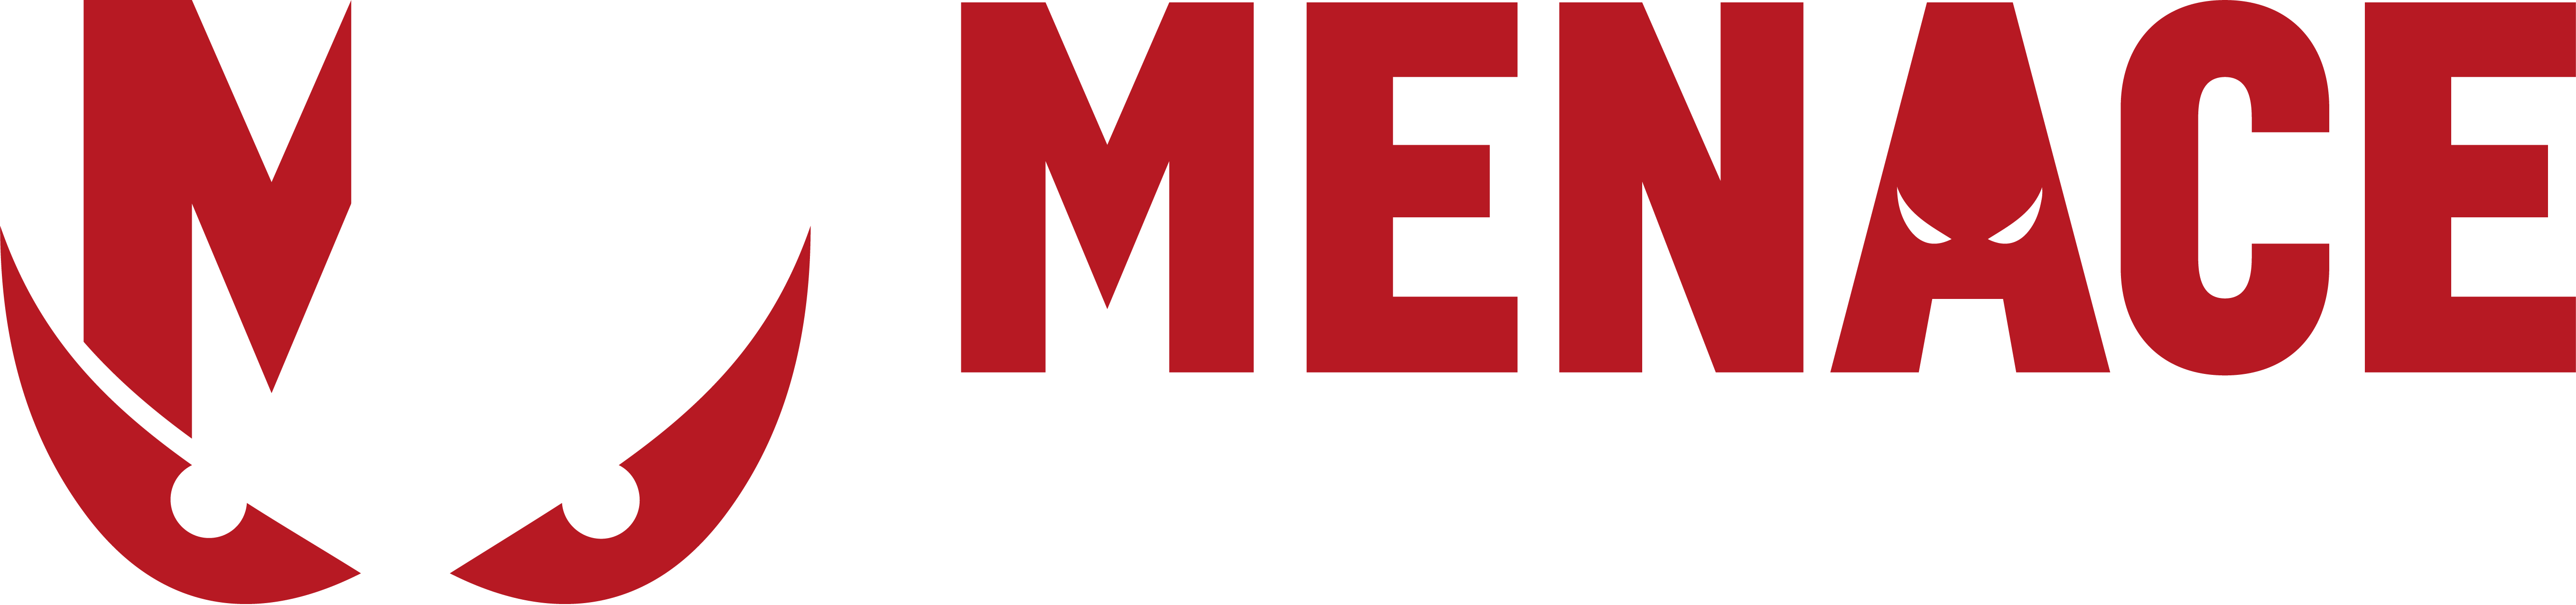 Menace Media